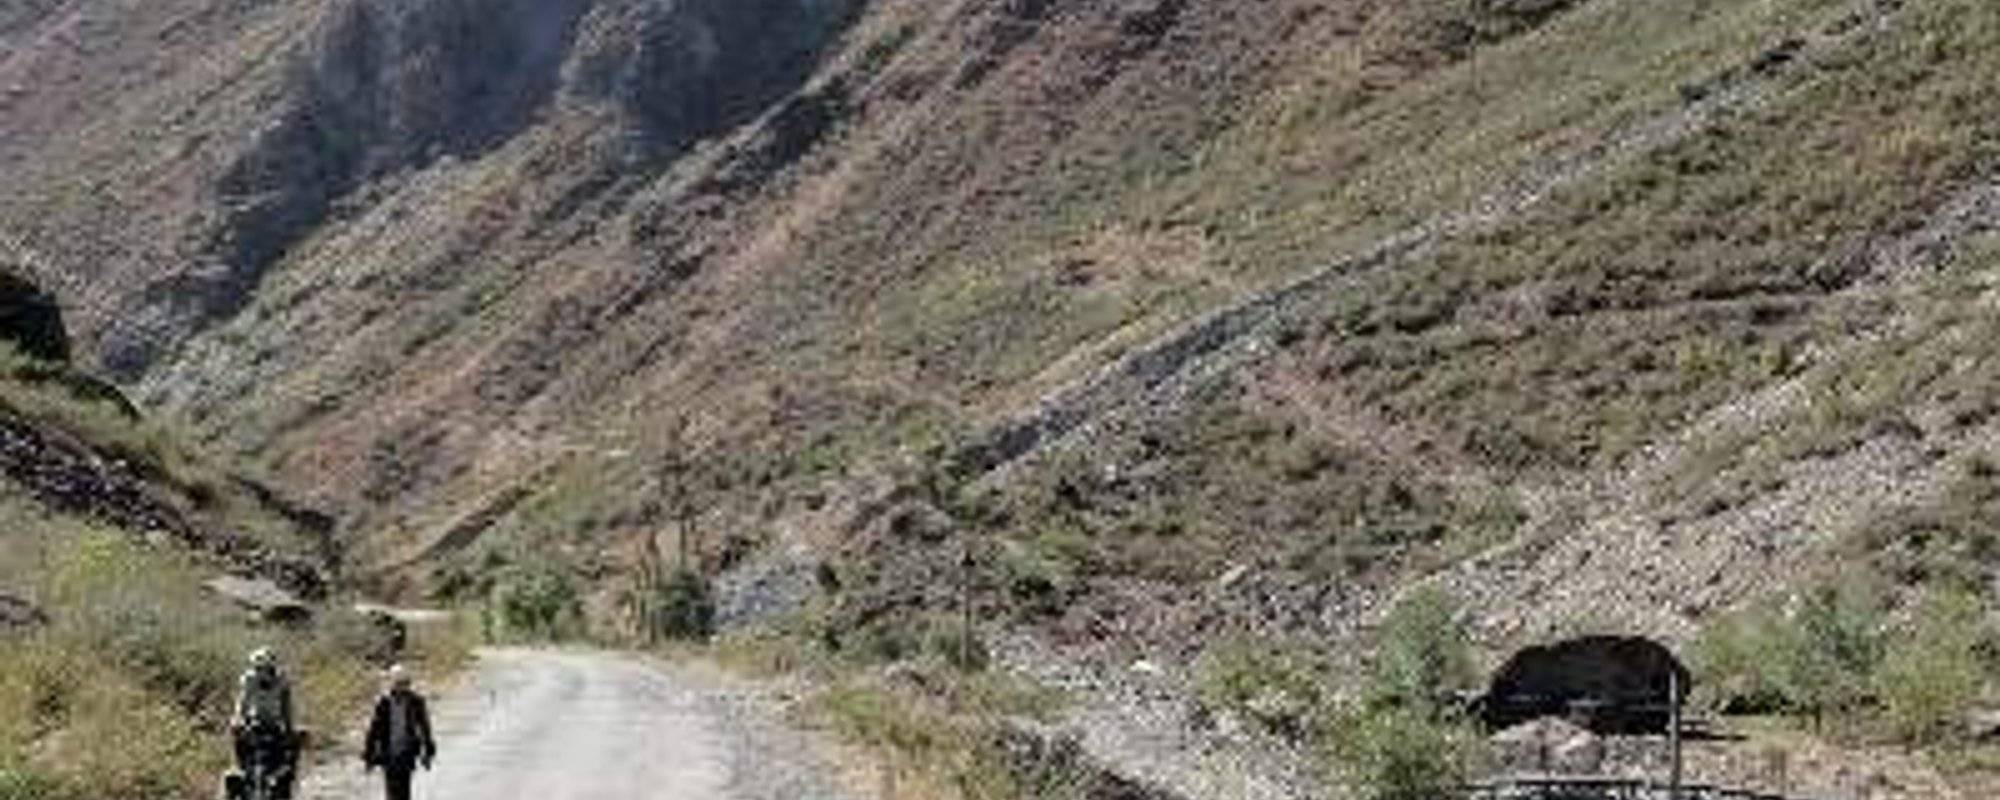 Tajikistan's Pamir Highway (Part 2)